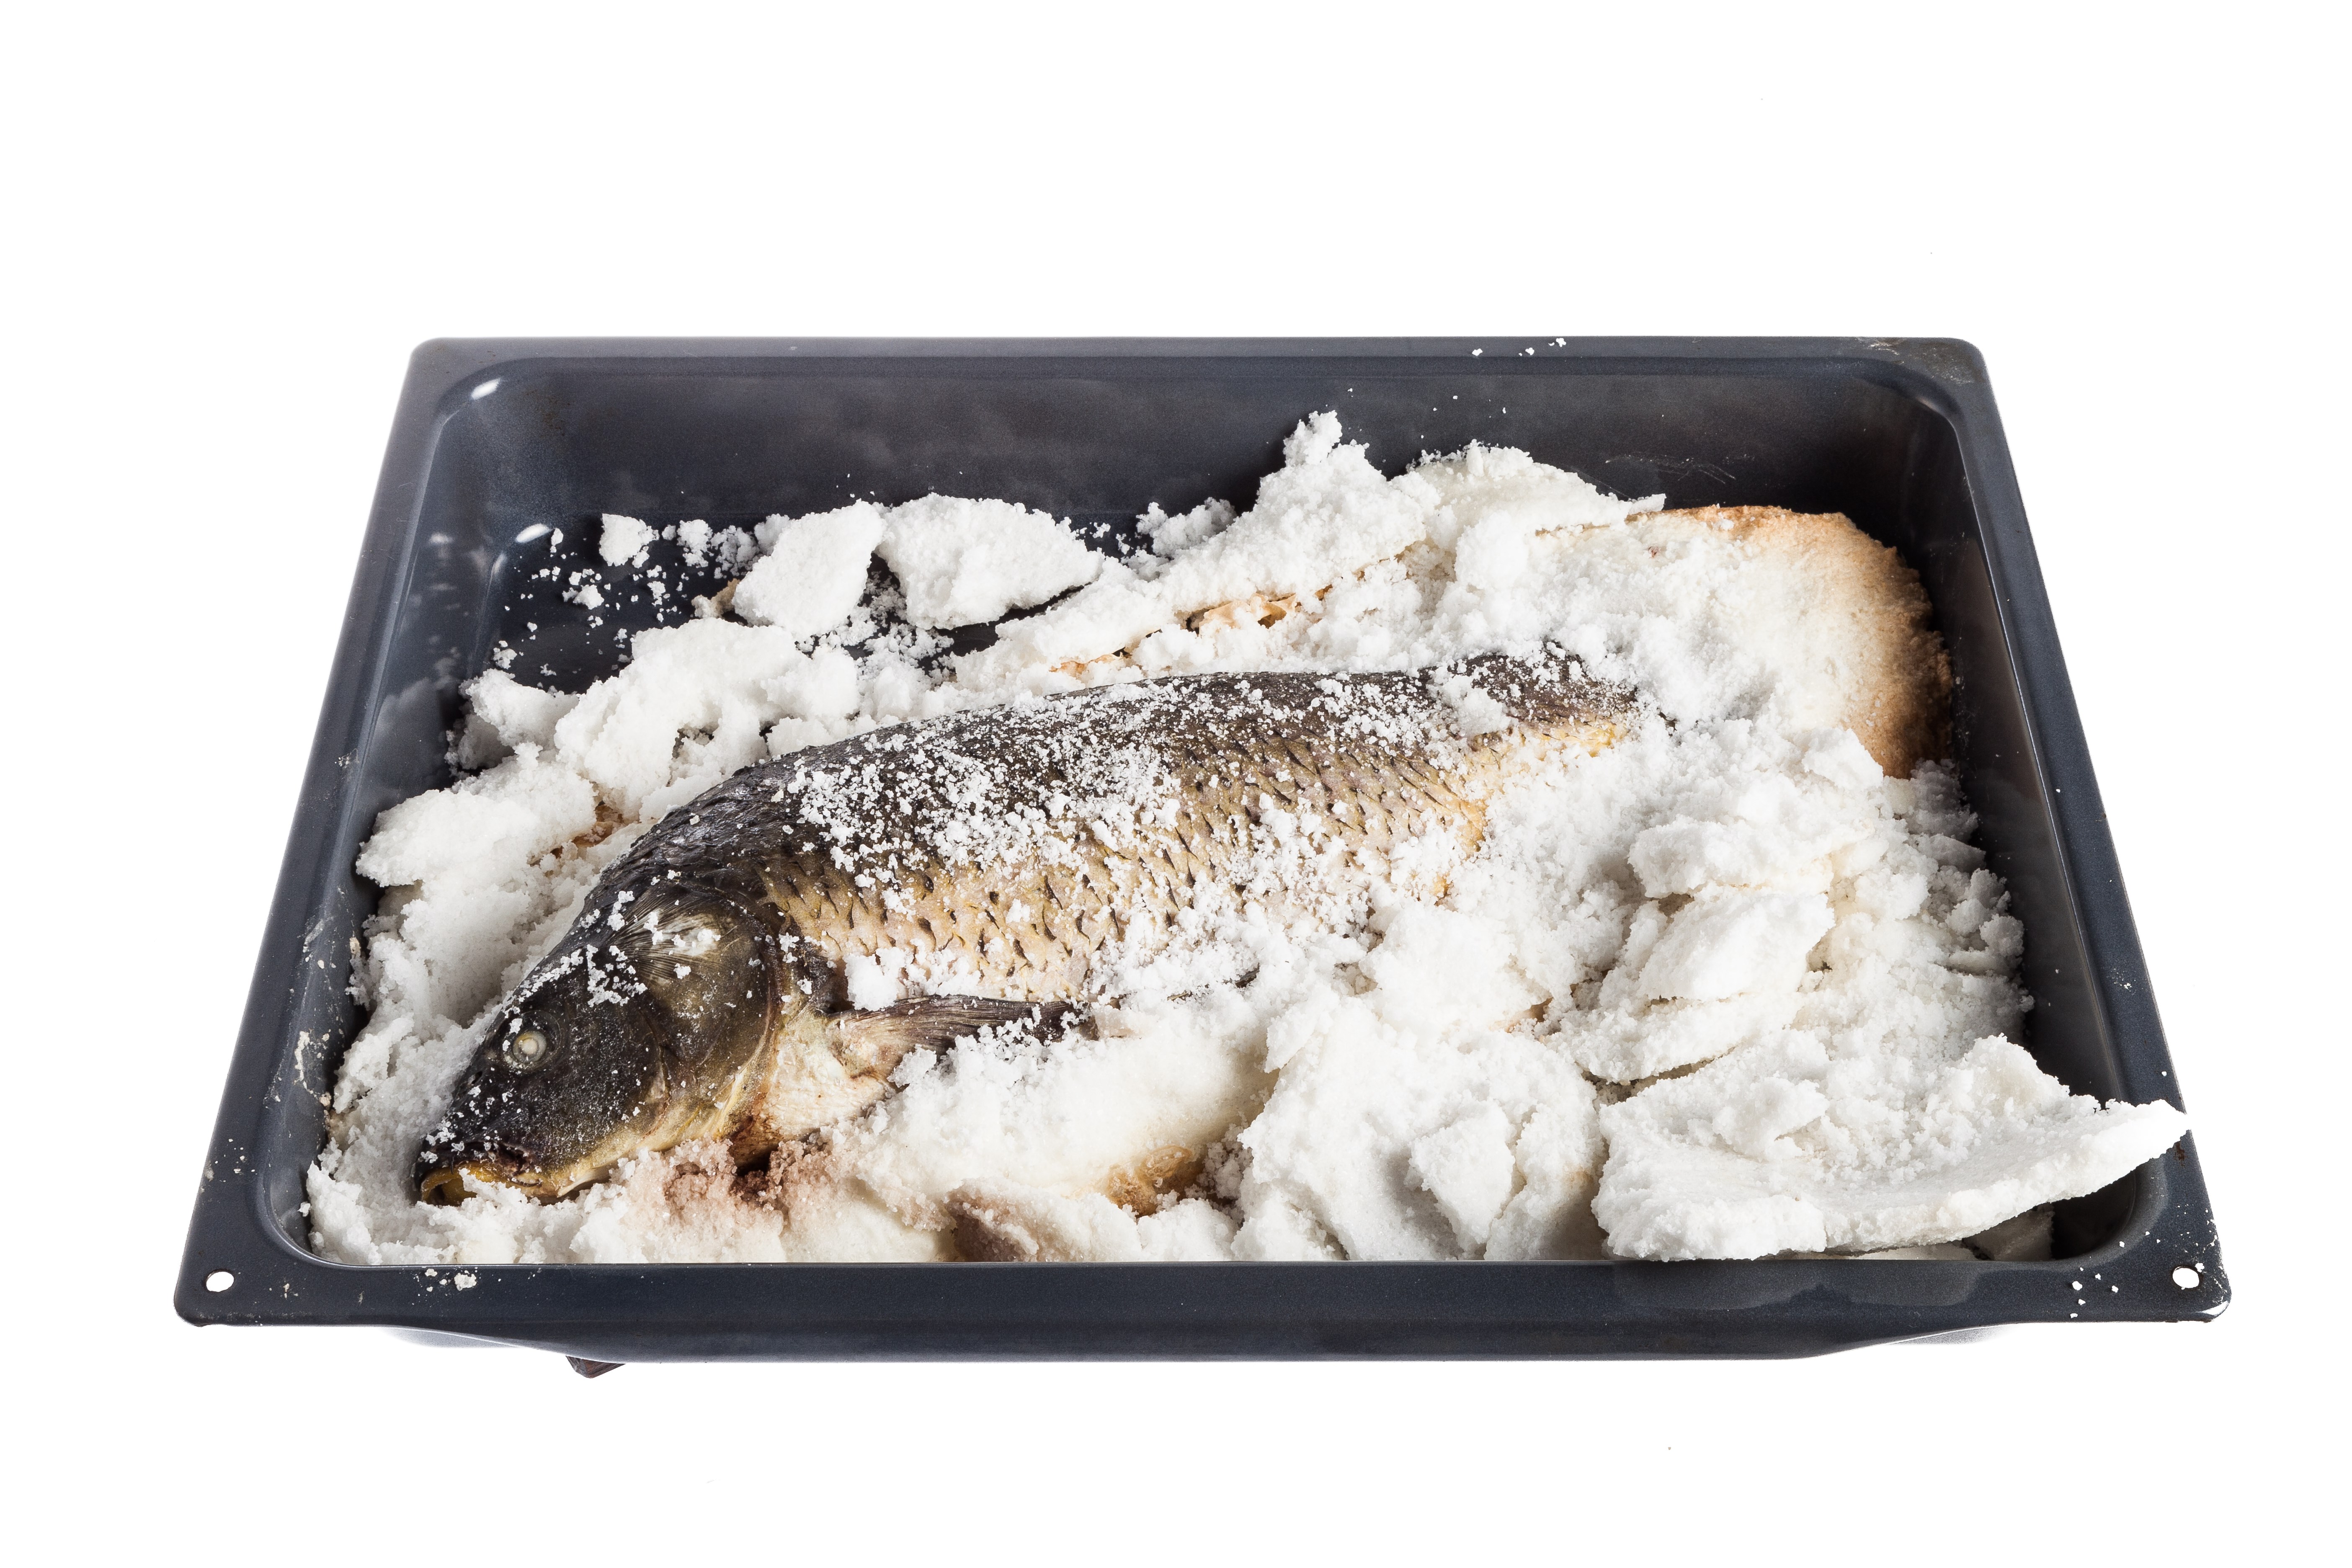 Сибас в соли с розмарином: рецепт дня